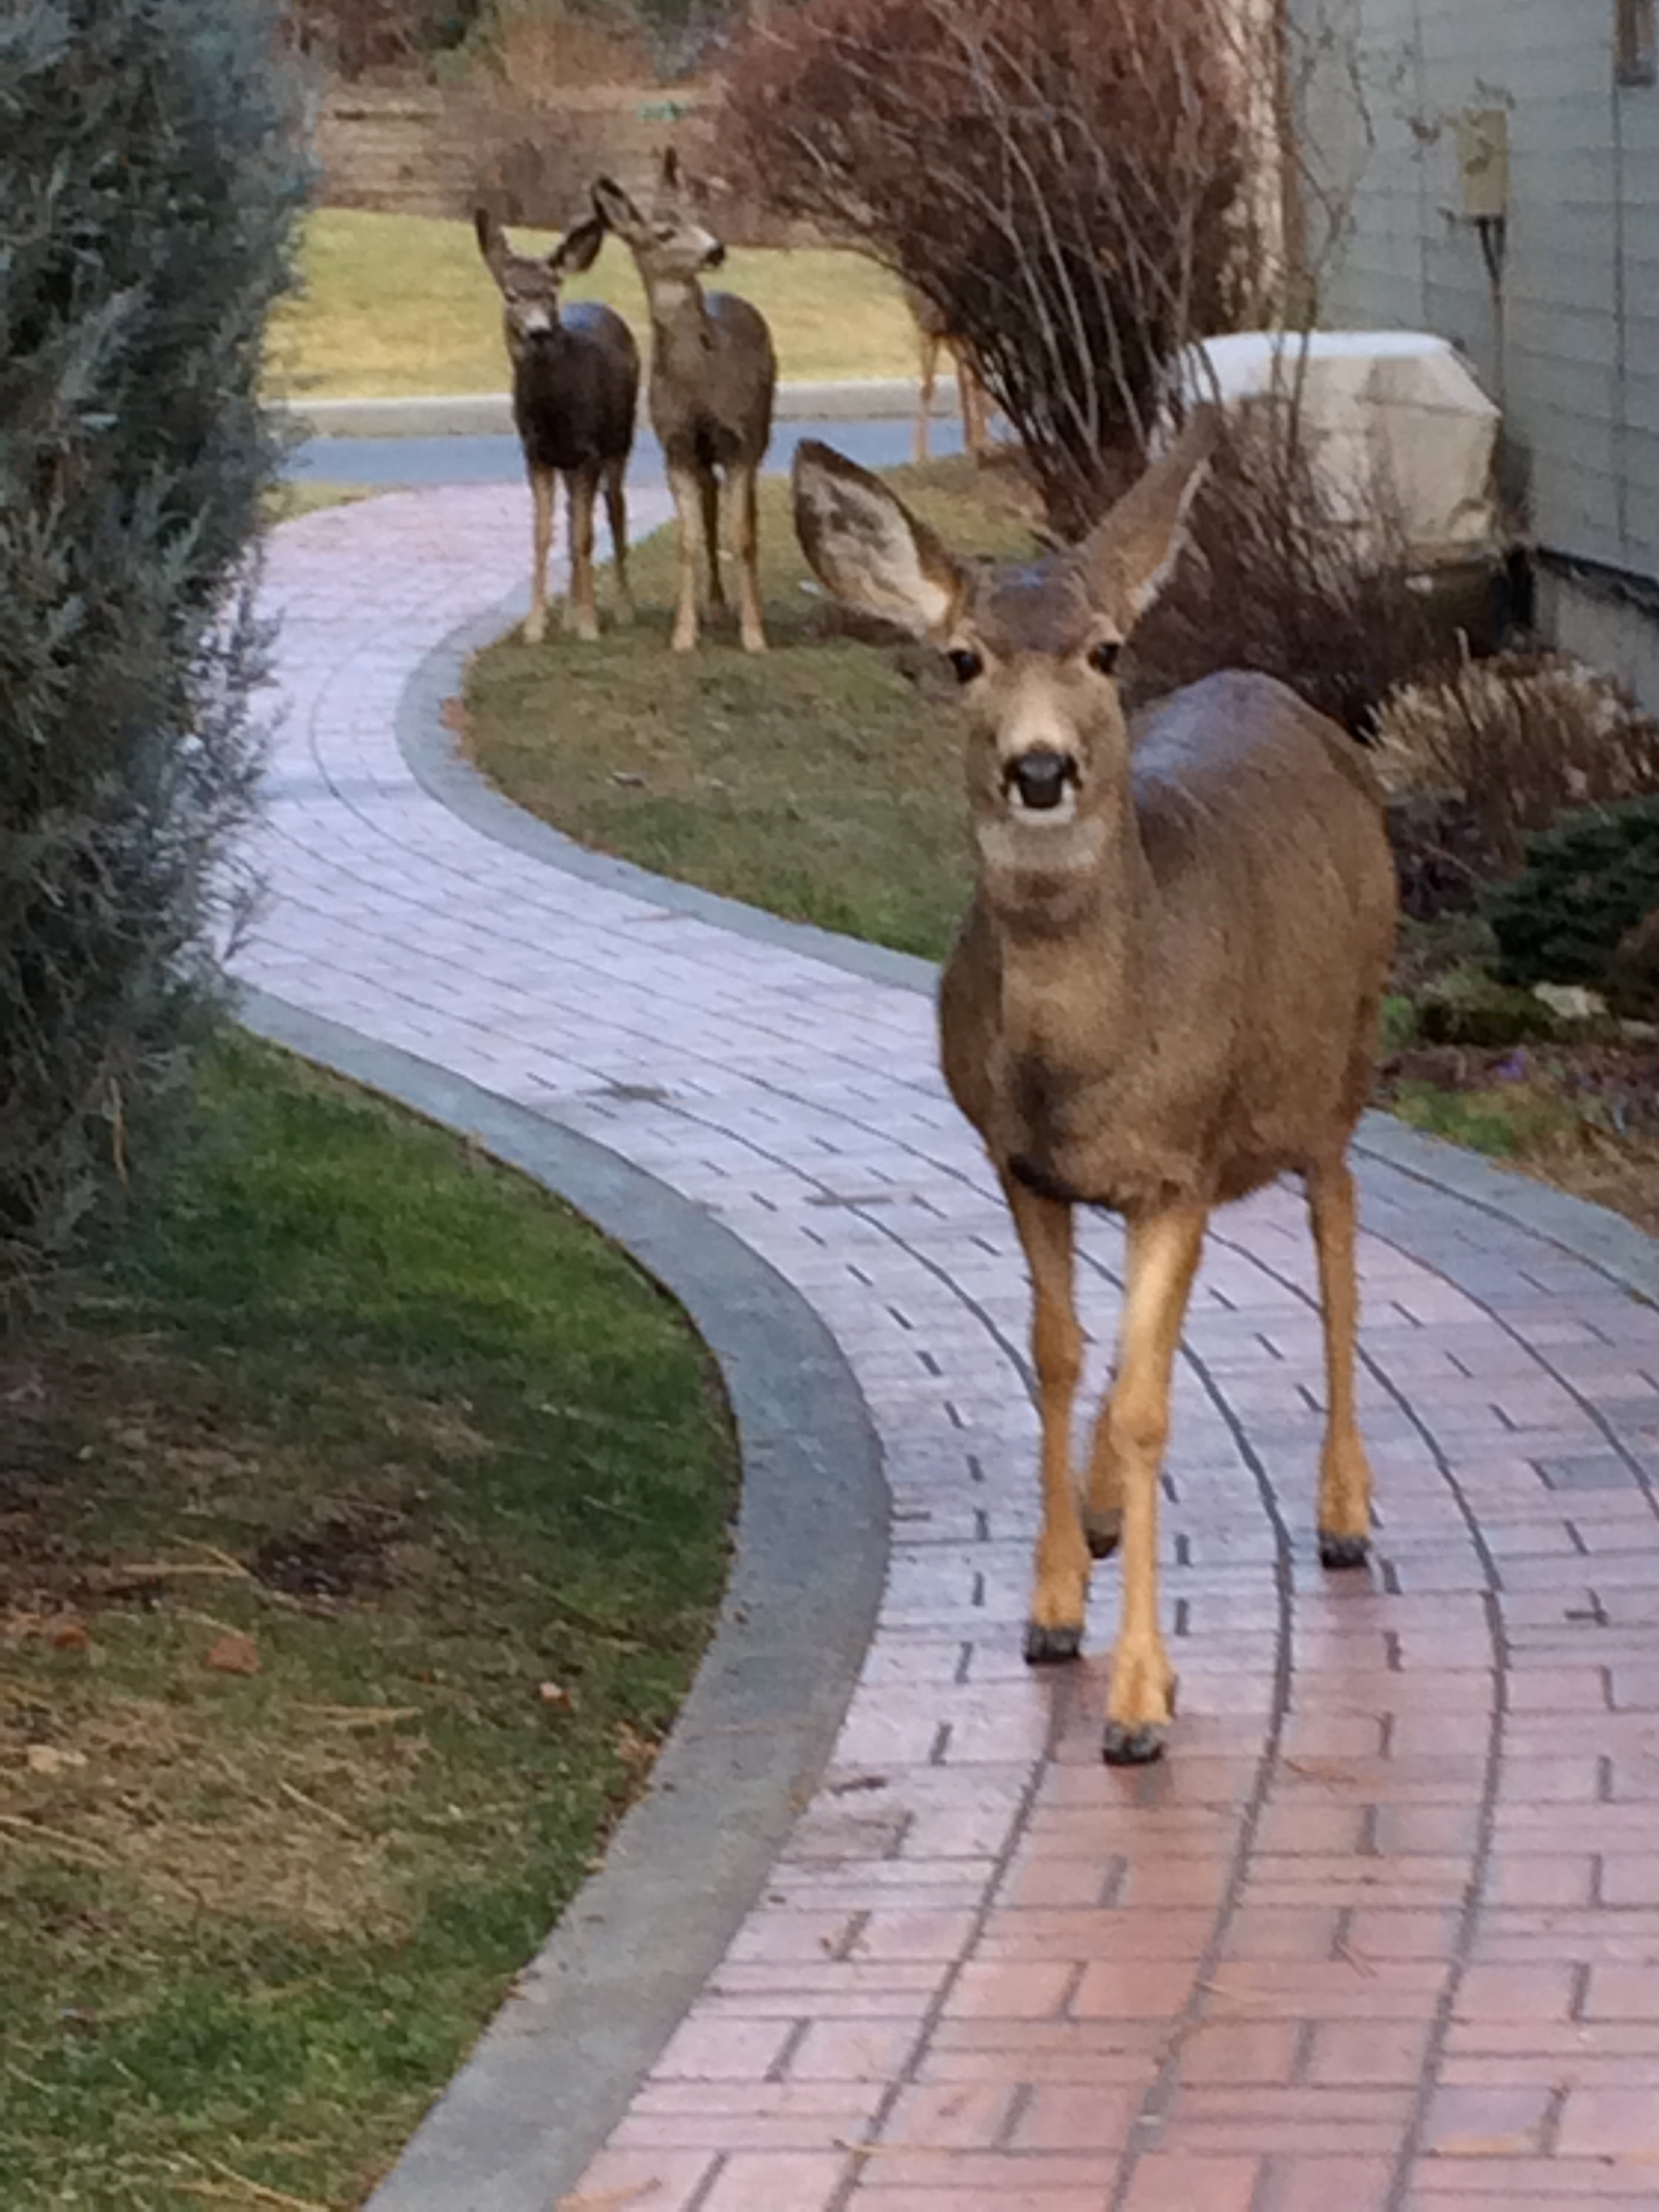 three mule deer in a neighborhood urban wildlife January 2014